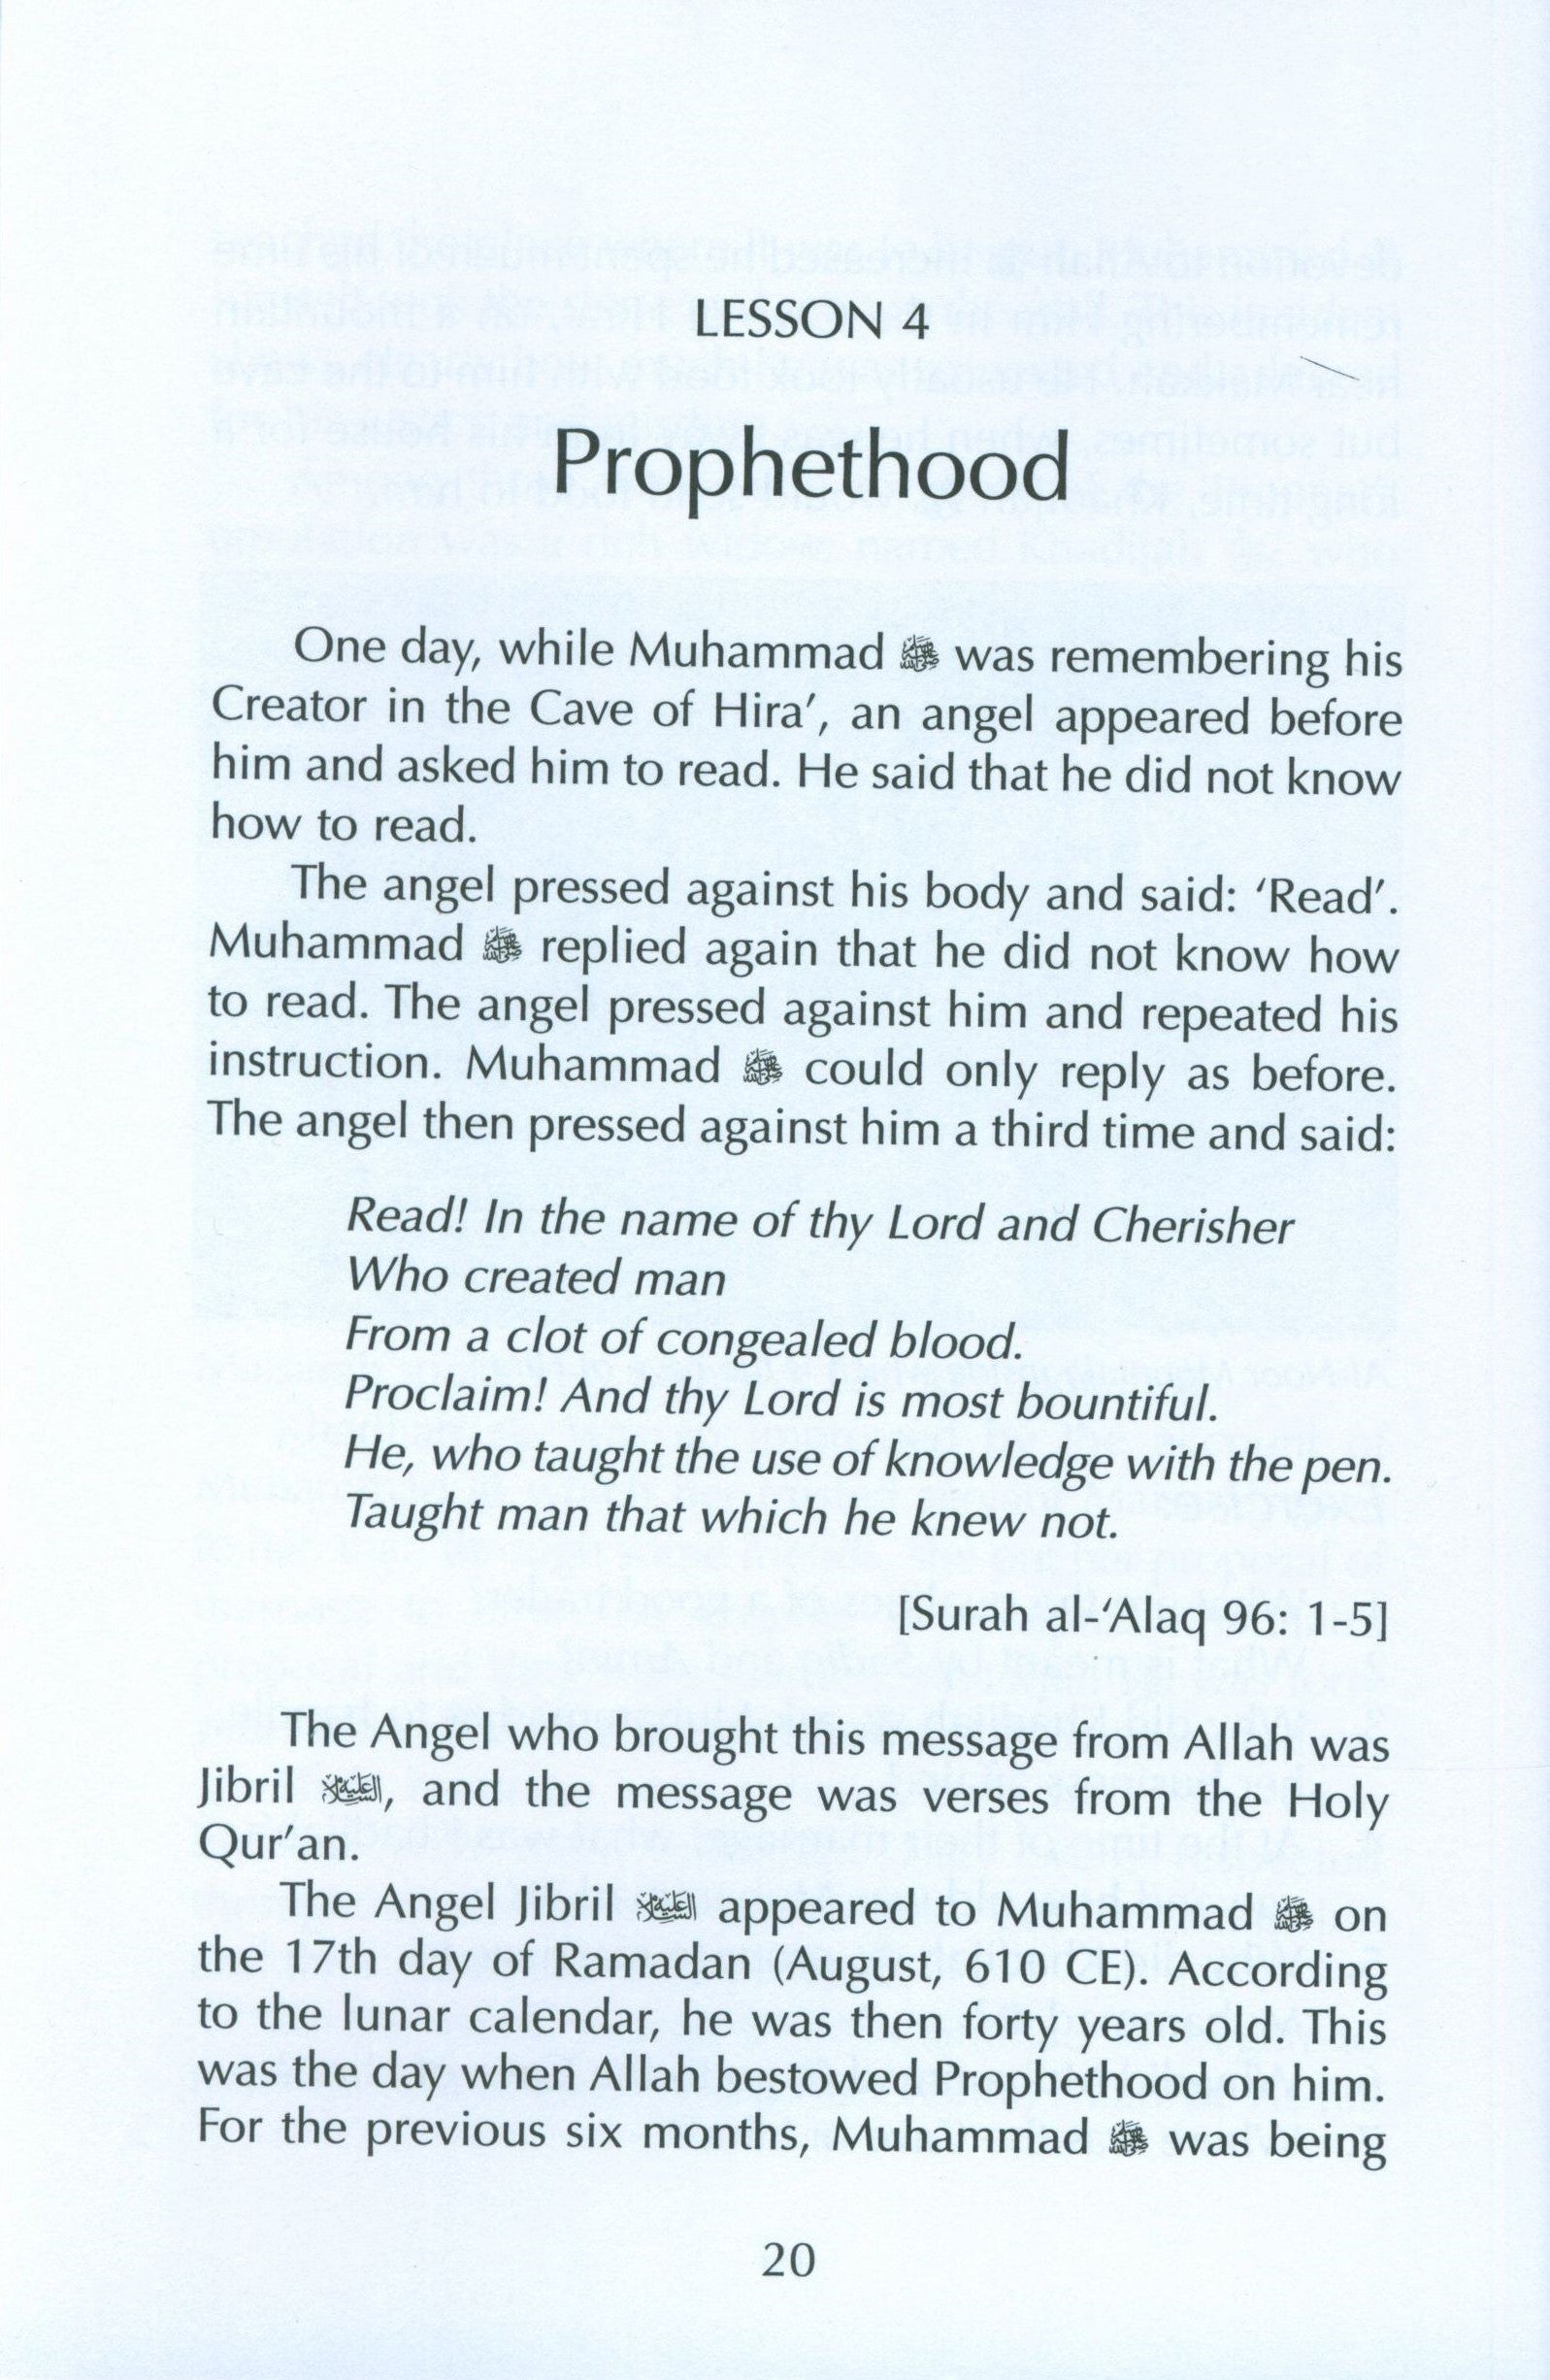 Muhammad the Beloved Prophet